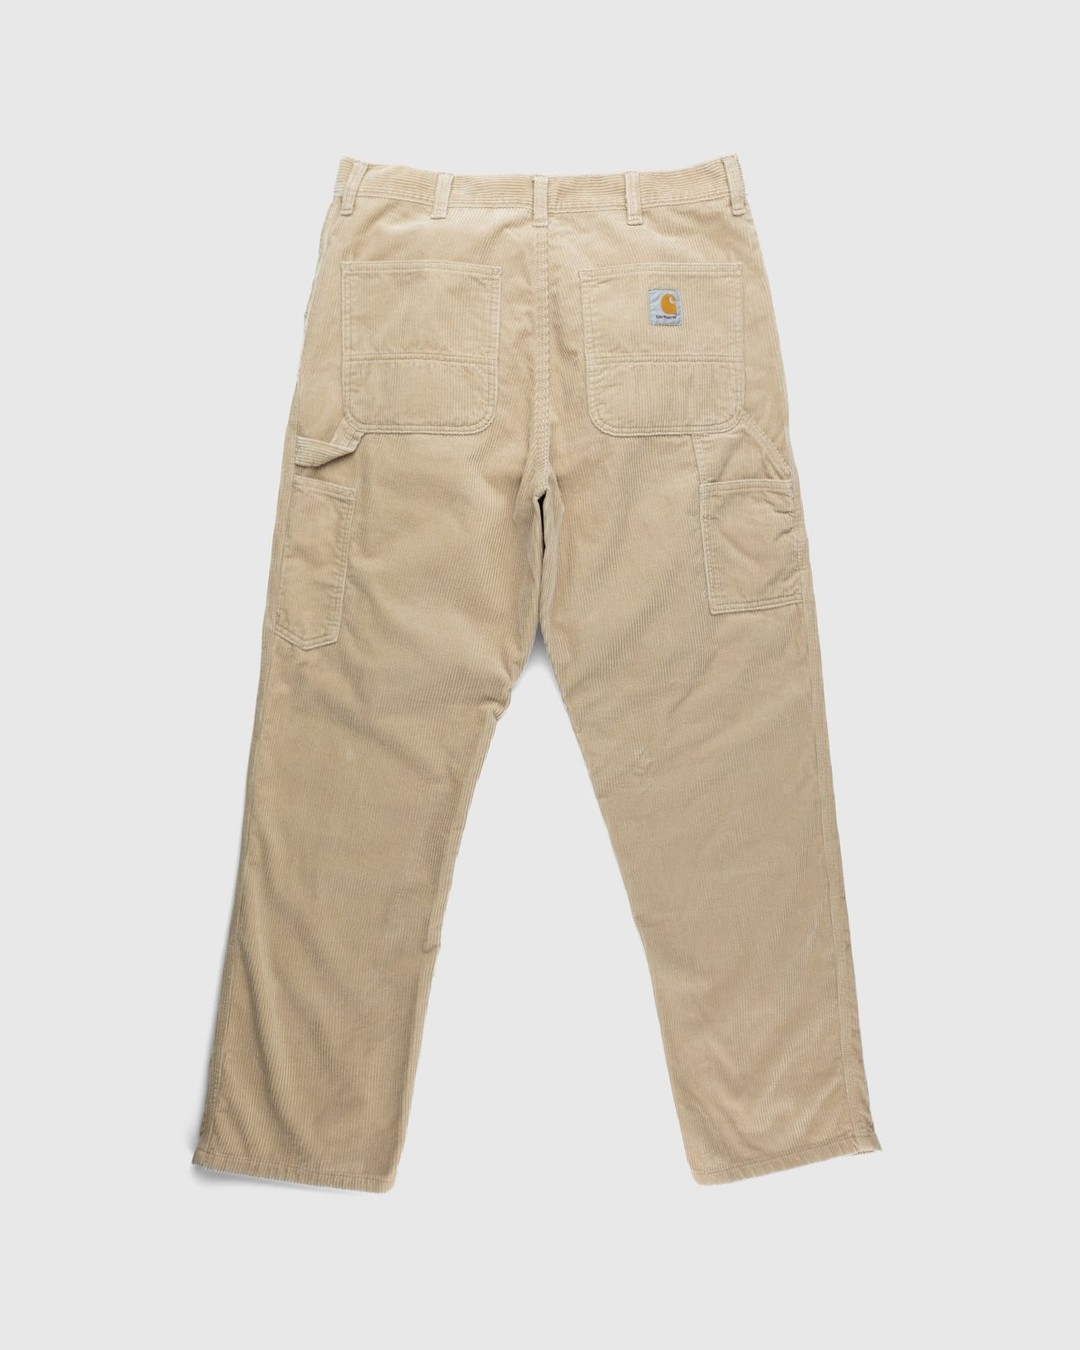 Carhartt WIP – Ruck Single Knee Pant Beige - Trousers - Brown - Image 2